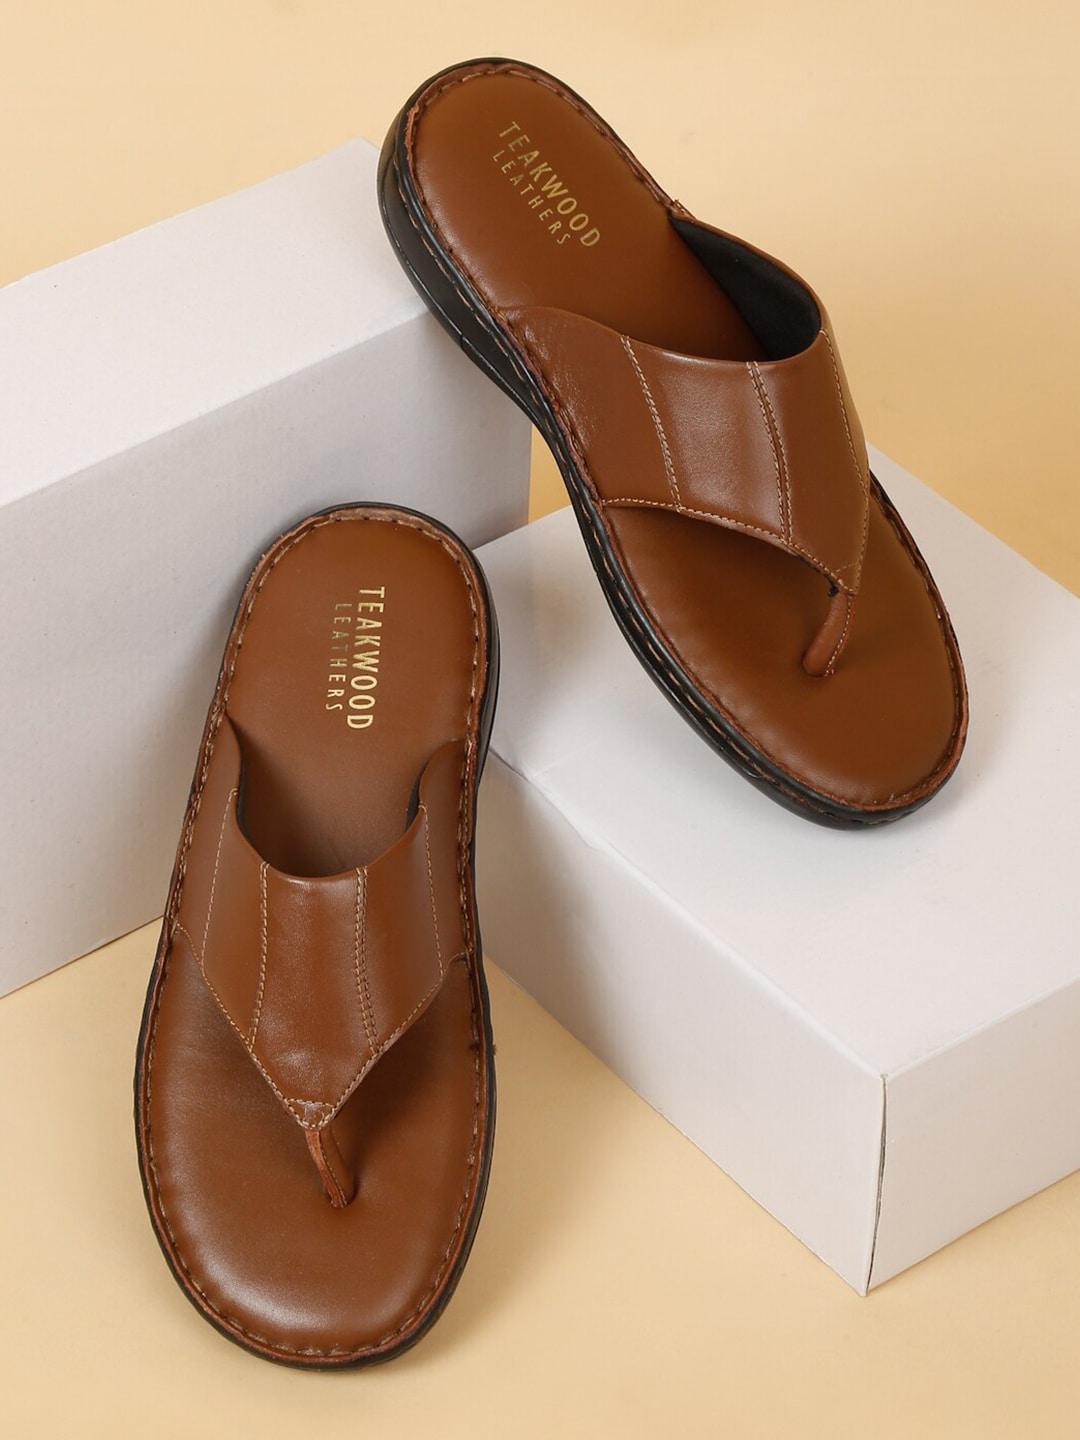 teakwood-leathers-men-leather-comfort-sandals